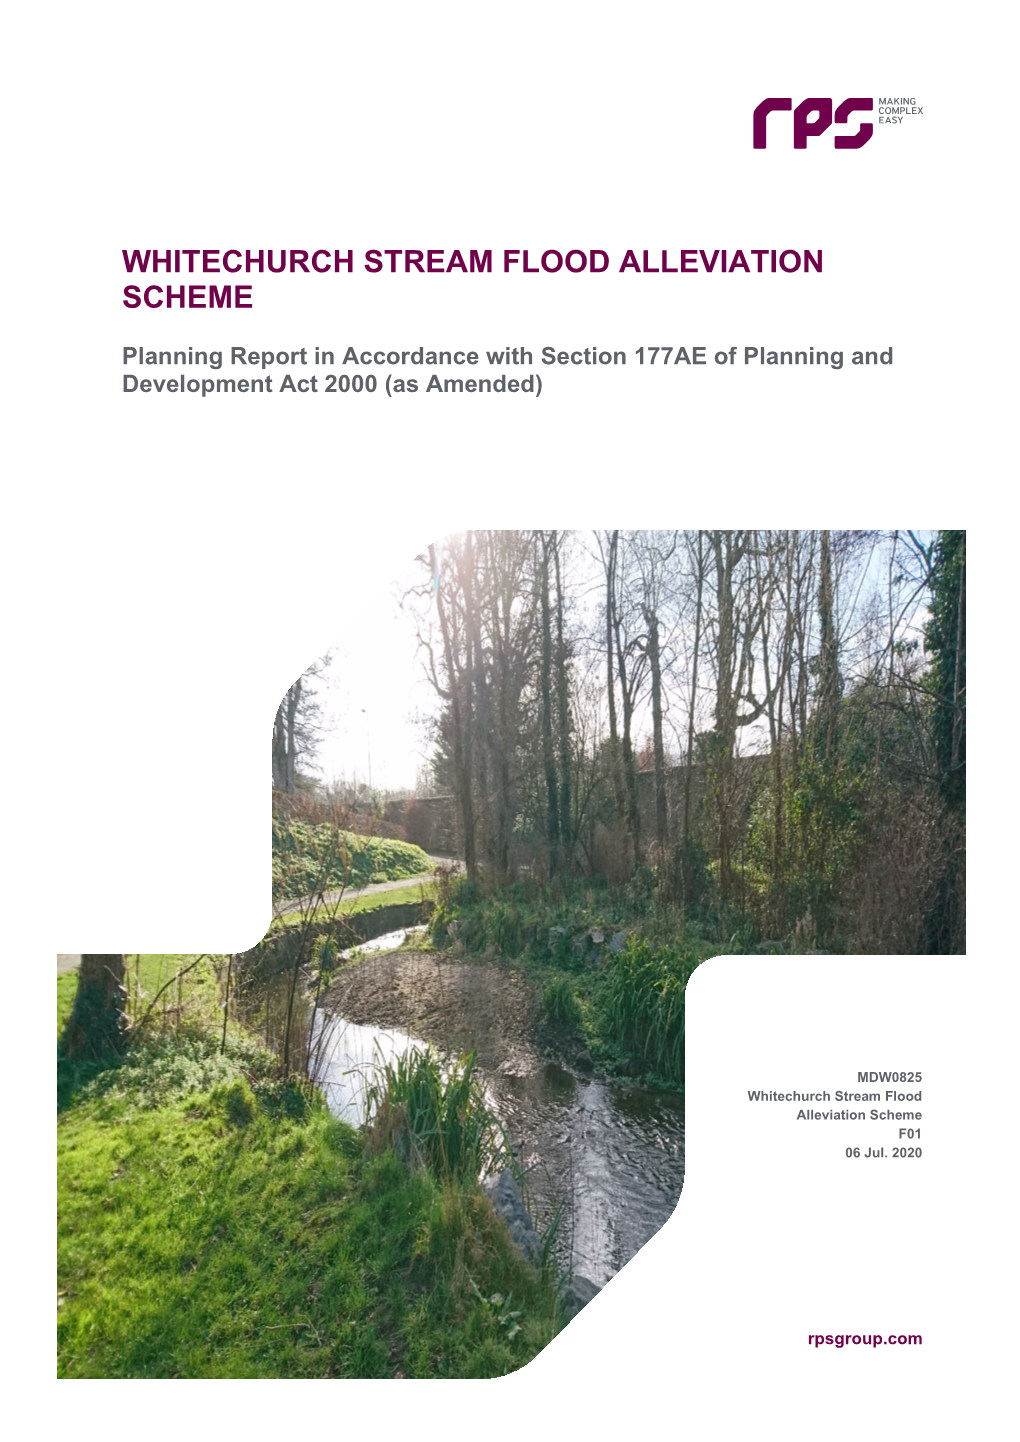 Whitechurch Stream Flood Alleviation Scheme